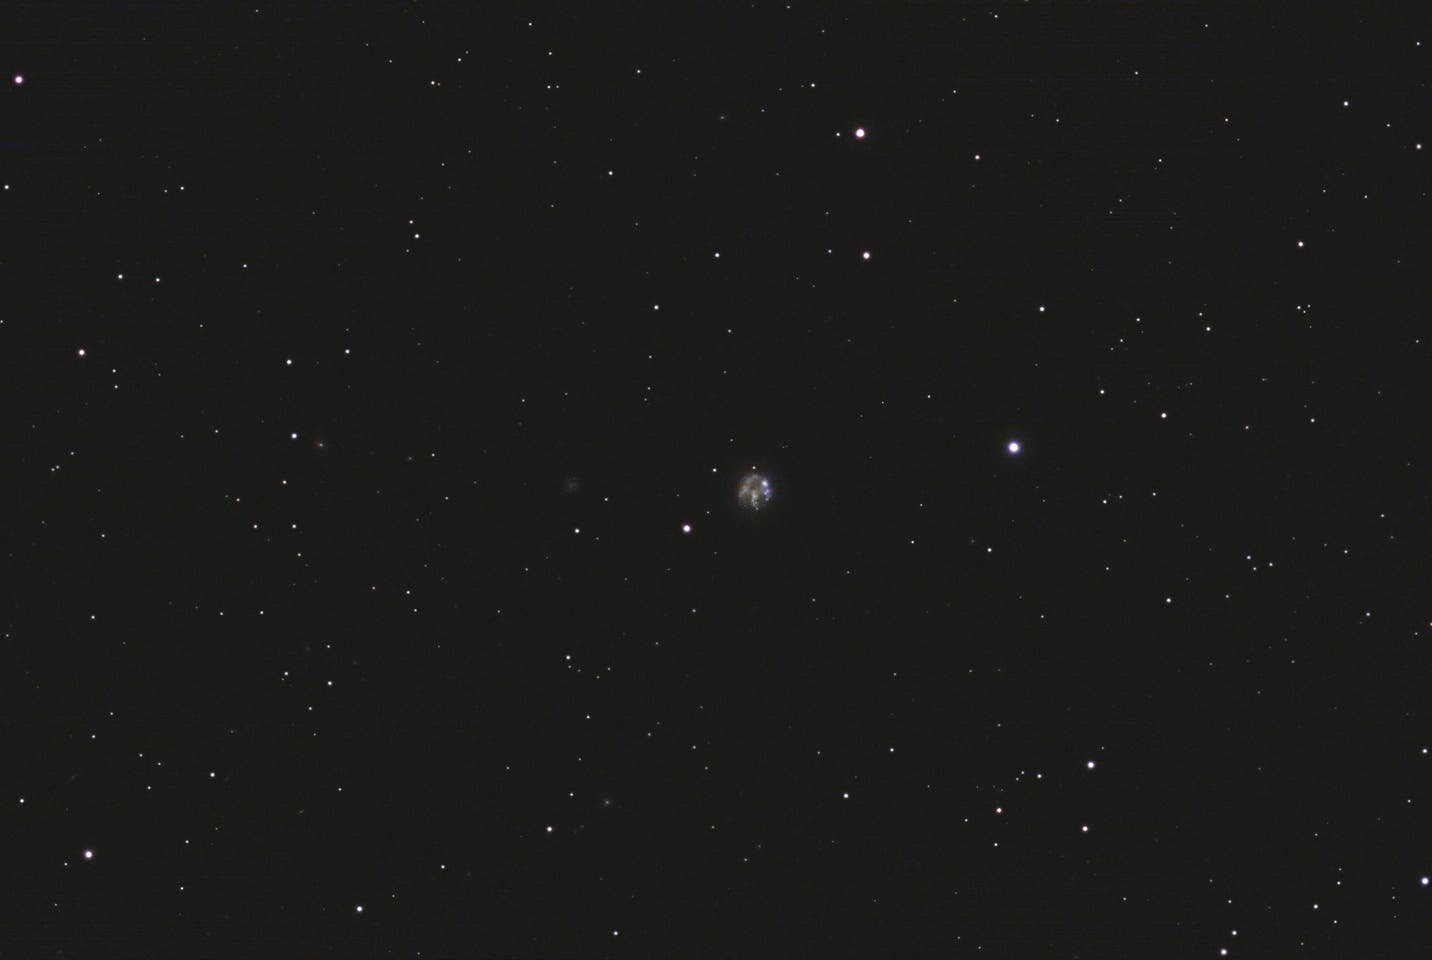 Arp 6 - NGC 2537